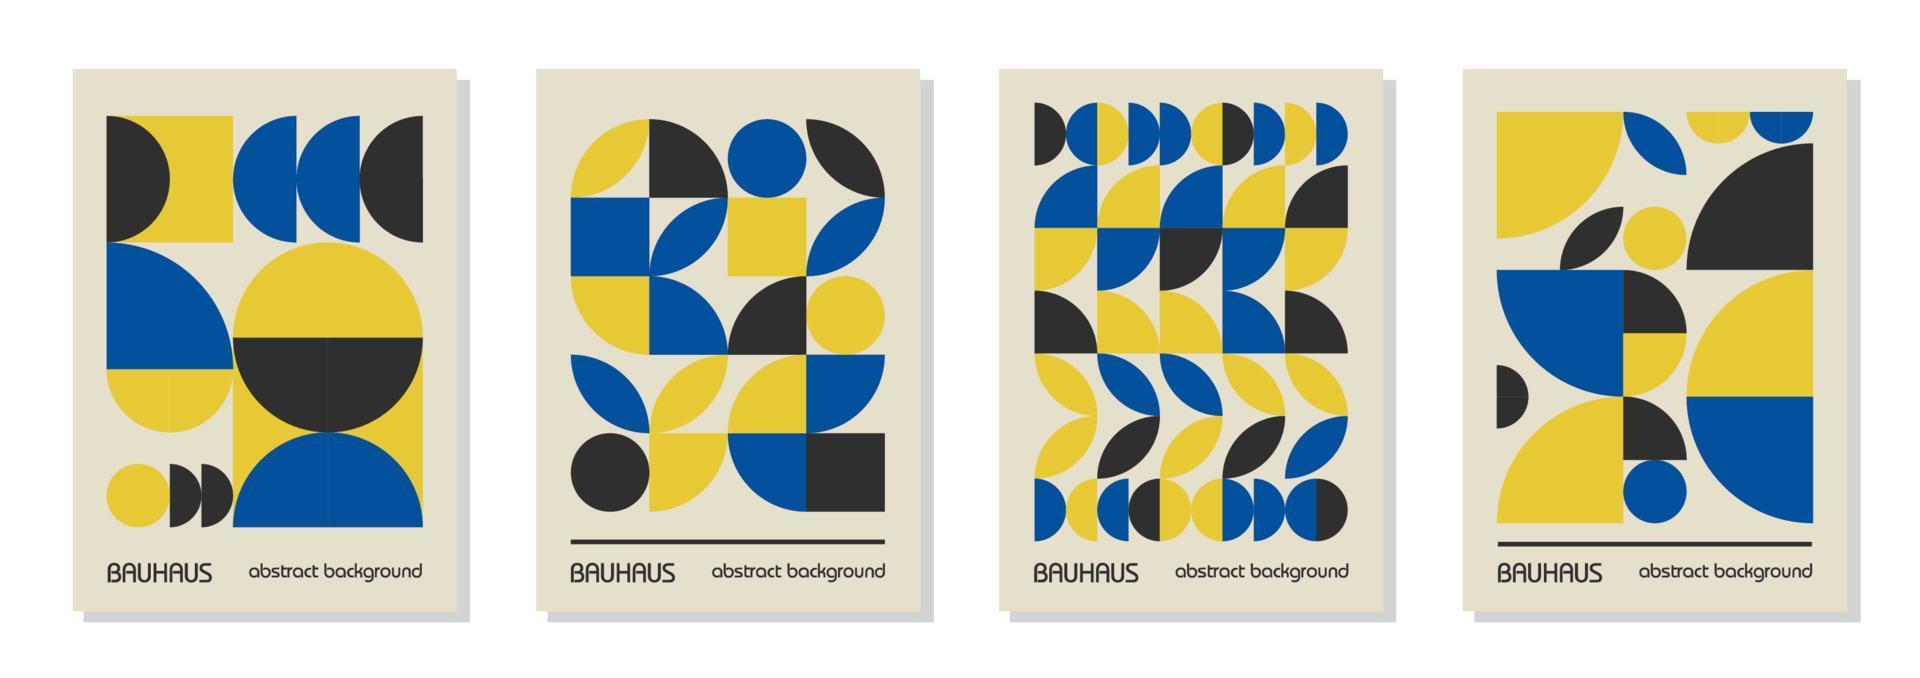 conjunto de 4 afiches de diseño geométrico mínimo de los años 20, arte mural, plantilla, diseño con elementos de formas primitivas. Fondo de vector de patrón retro bauhaus, colores de bandera ucraniana azul, amarillo y negro